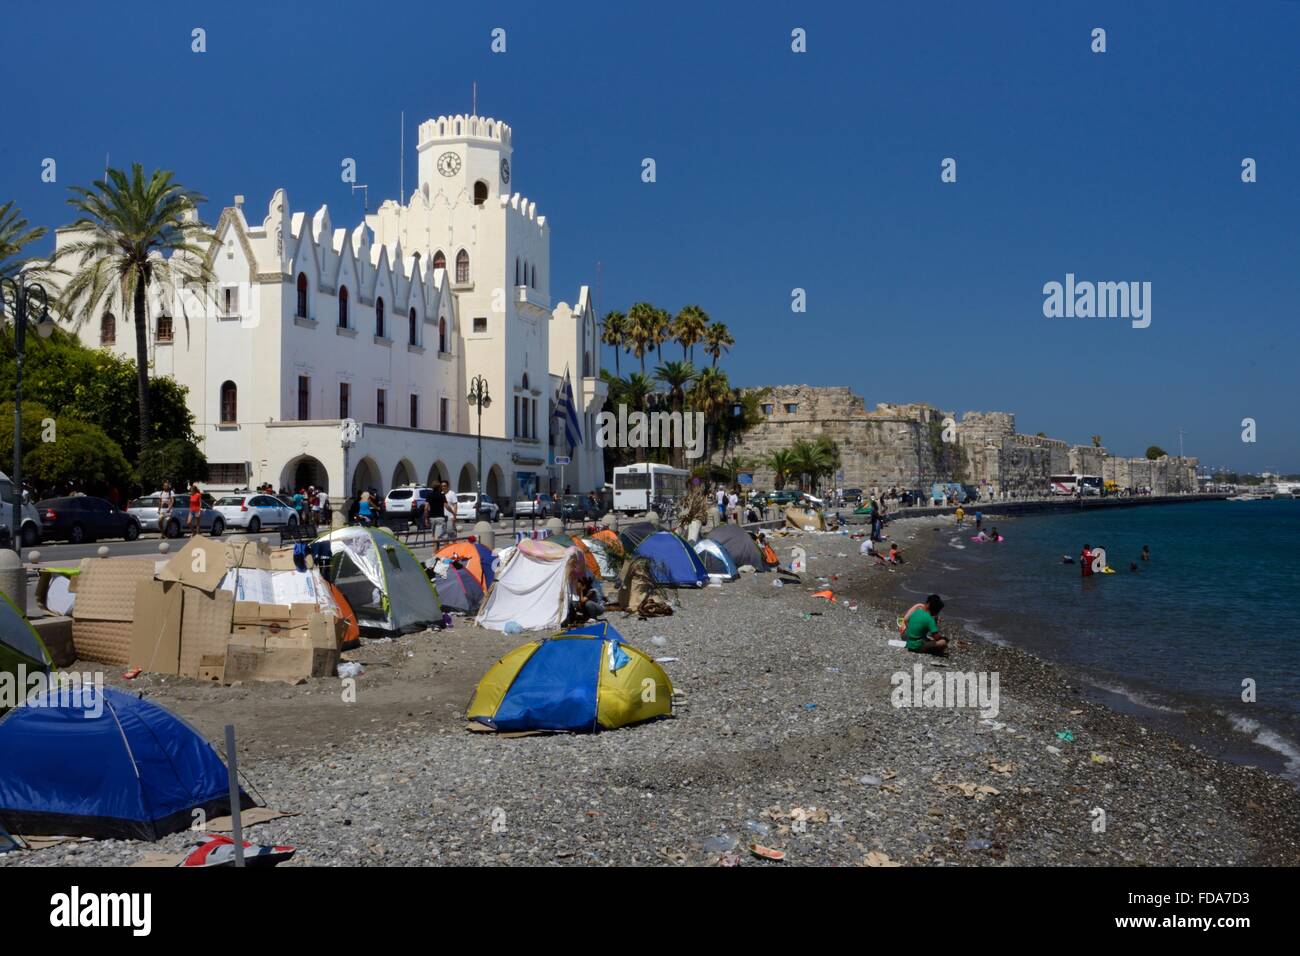 Les migrants camping sur la plage et nager dans la mer dans la ville de Kos en face du poste de police, Athènes, Grèce. Banque D'Images